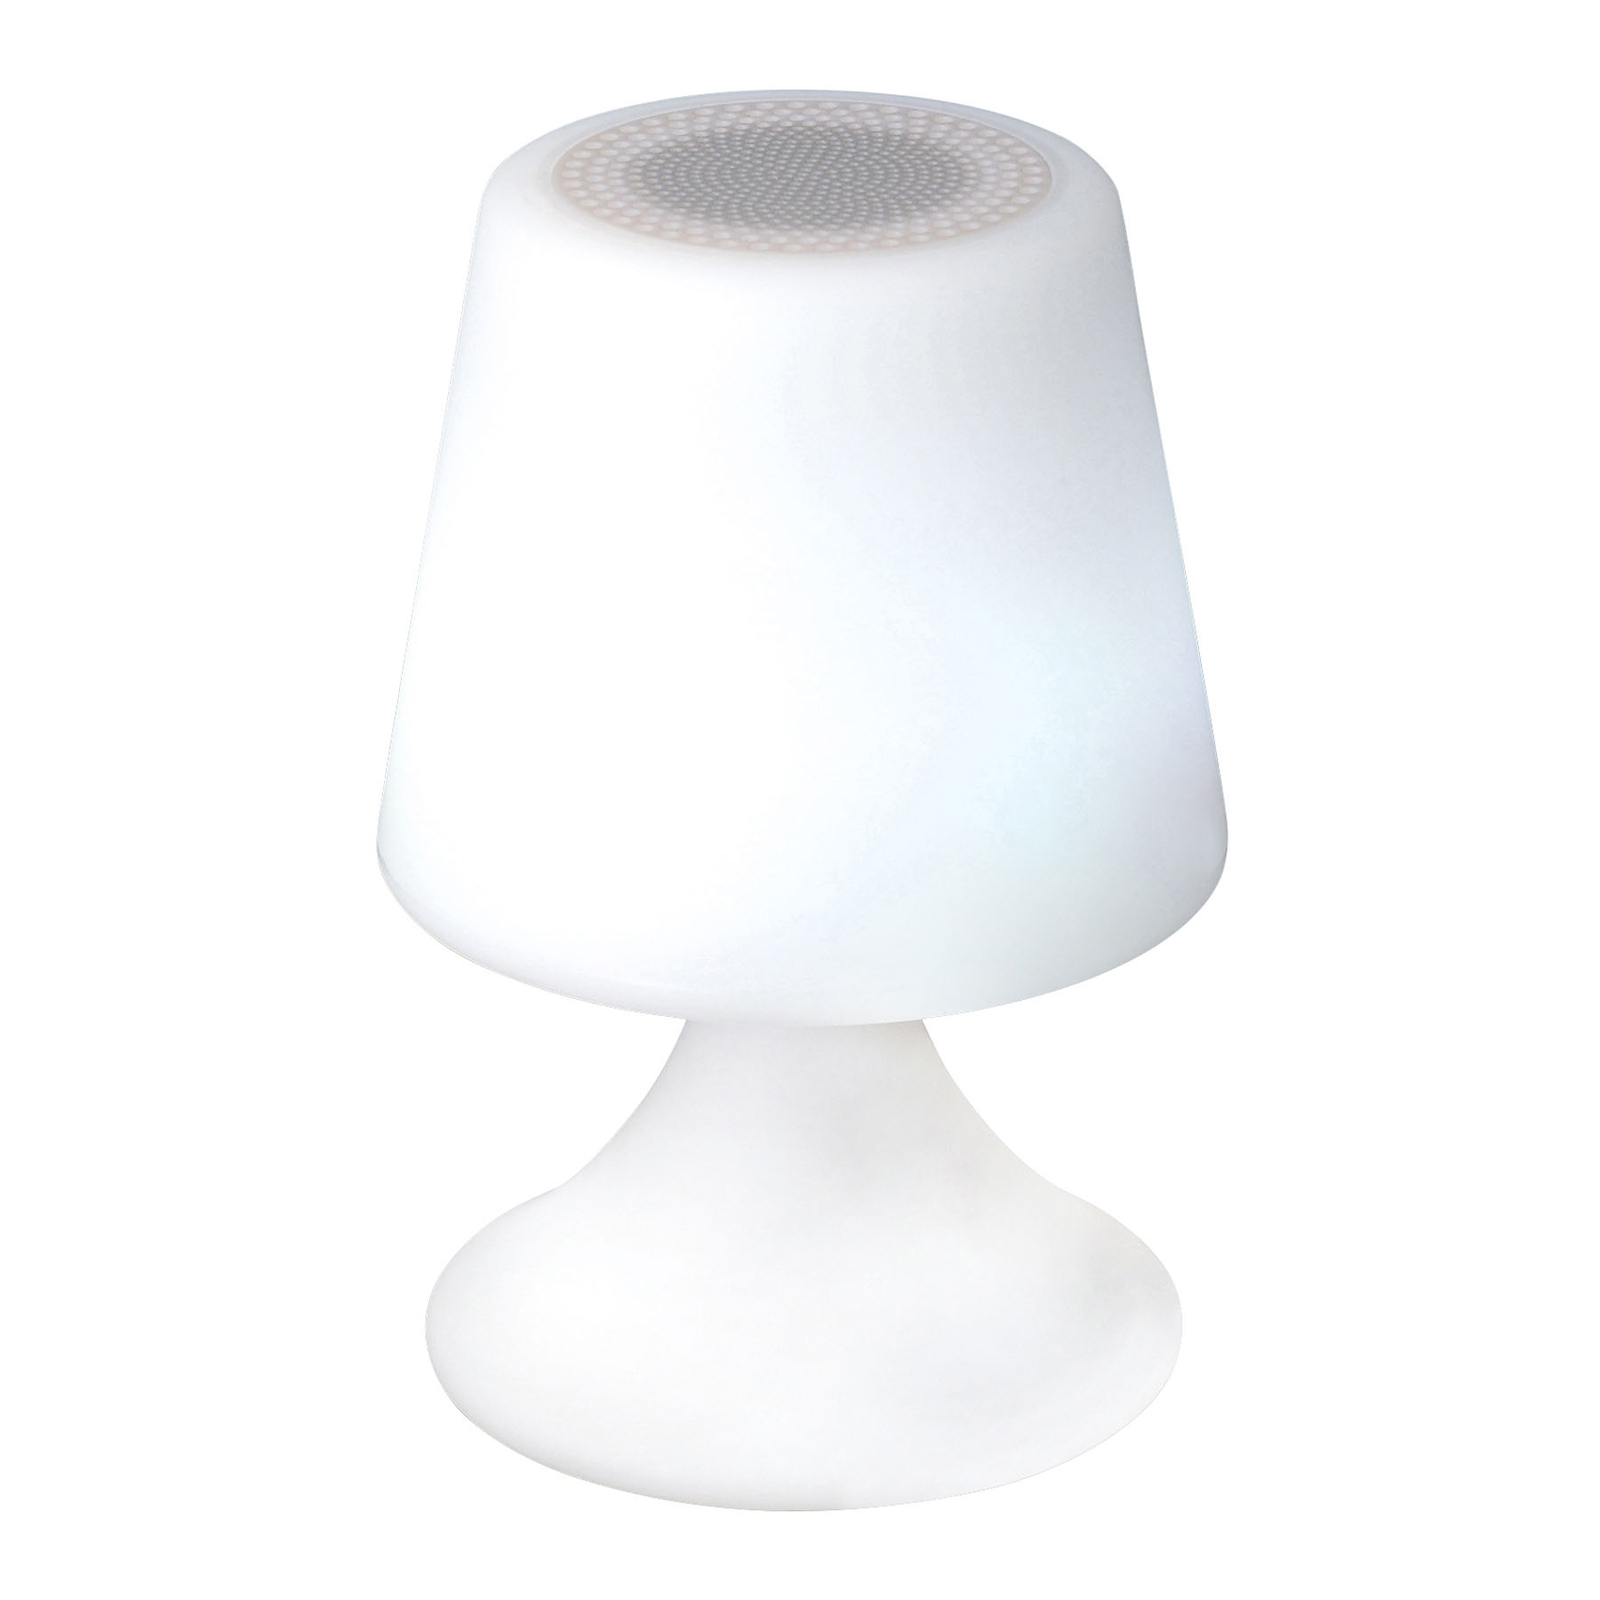 Lampe déco LED Curbi avec enceinte Bluetooth